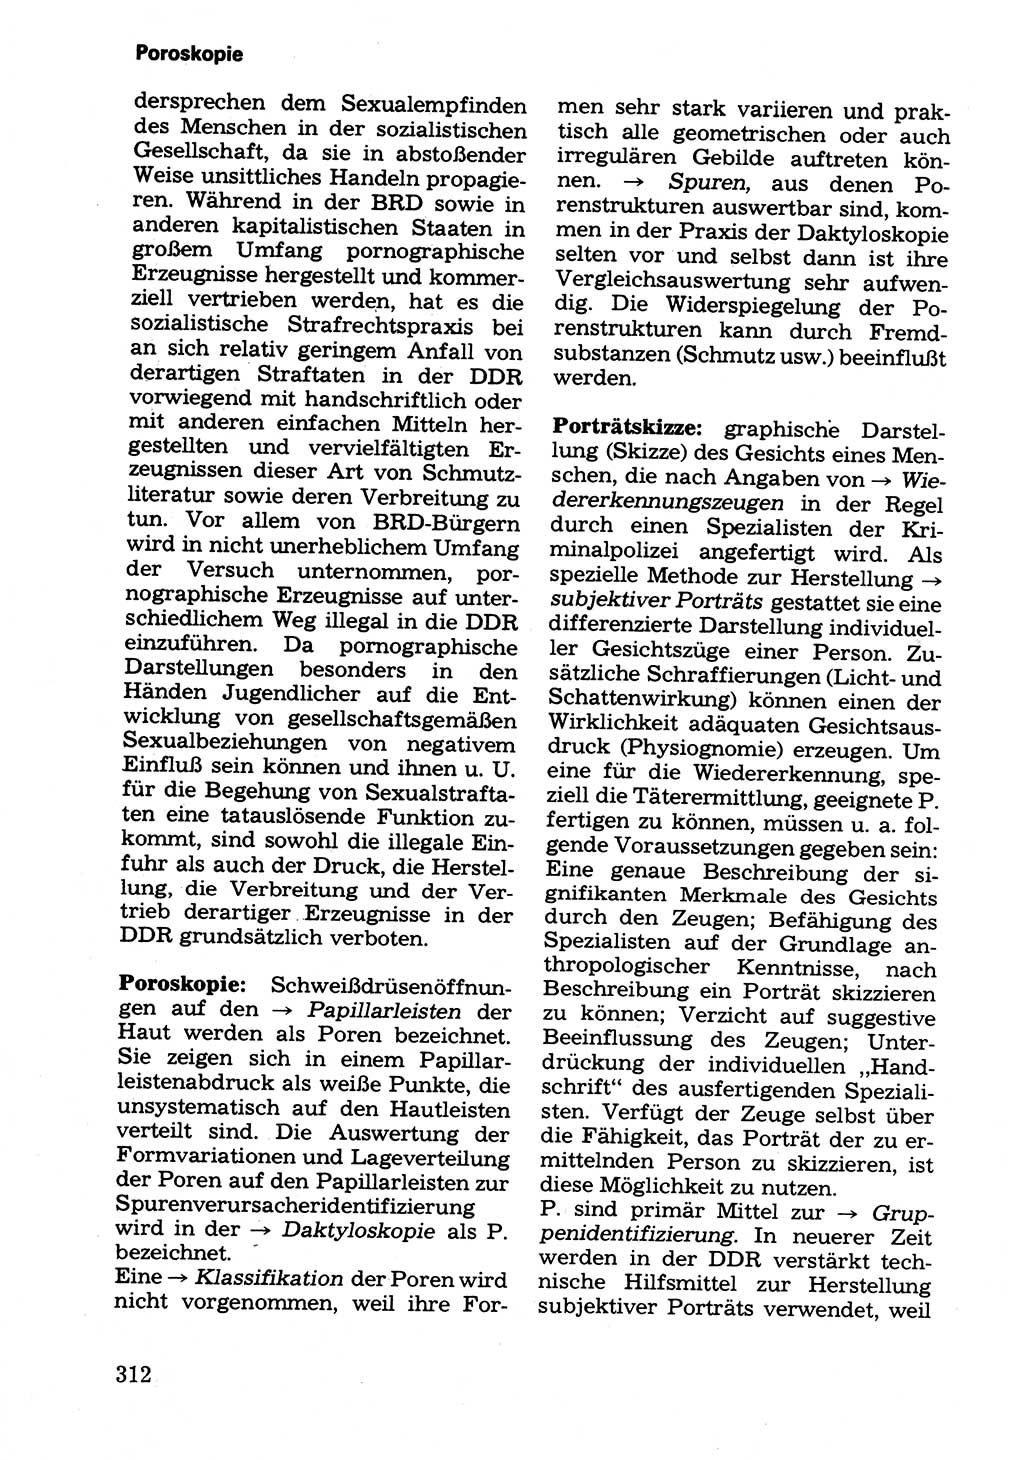 Wörterbuch der sozialistischen Kriminalistik [Deutsche Demokratische Republik (DDR)] 1981, Seite 312 (Wb. soz. Krim. DDR 1981, S. 312)